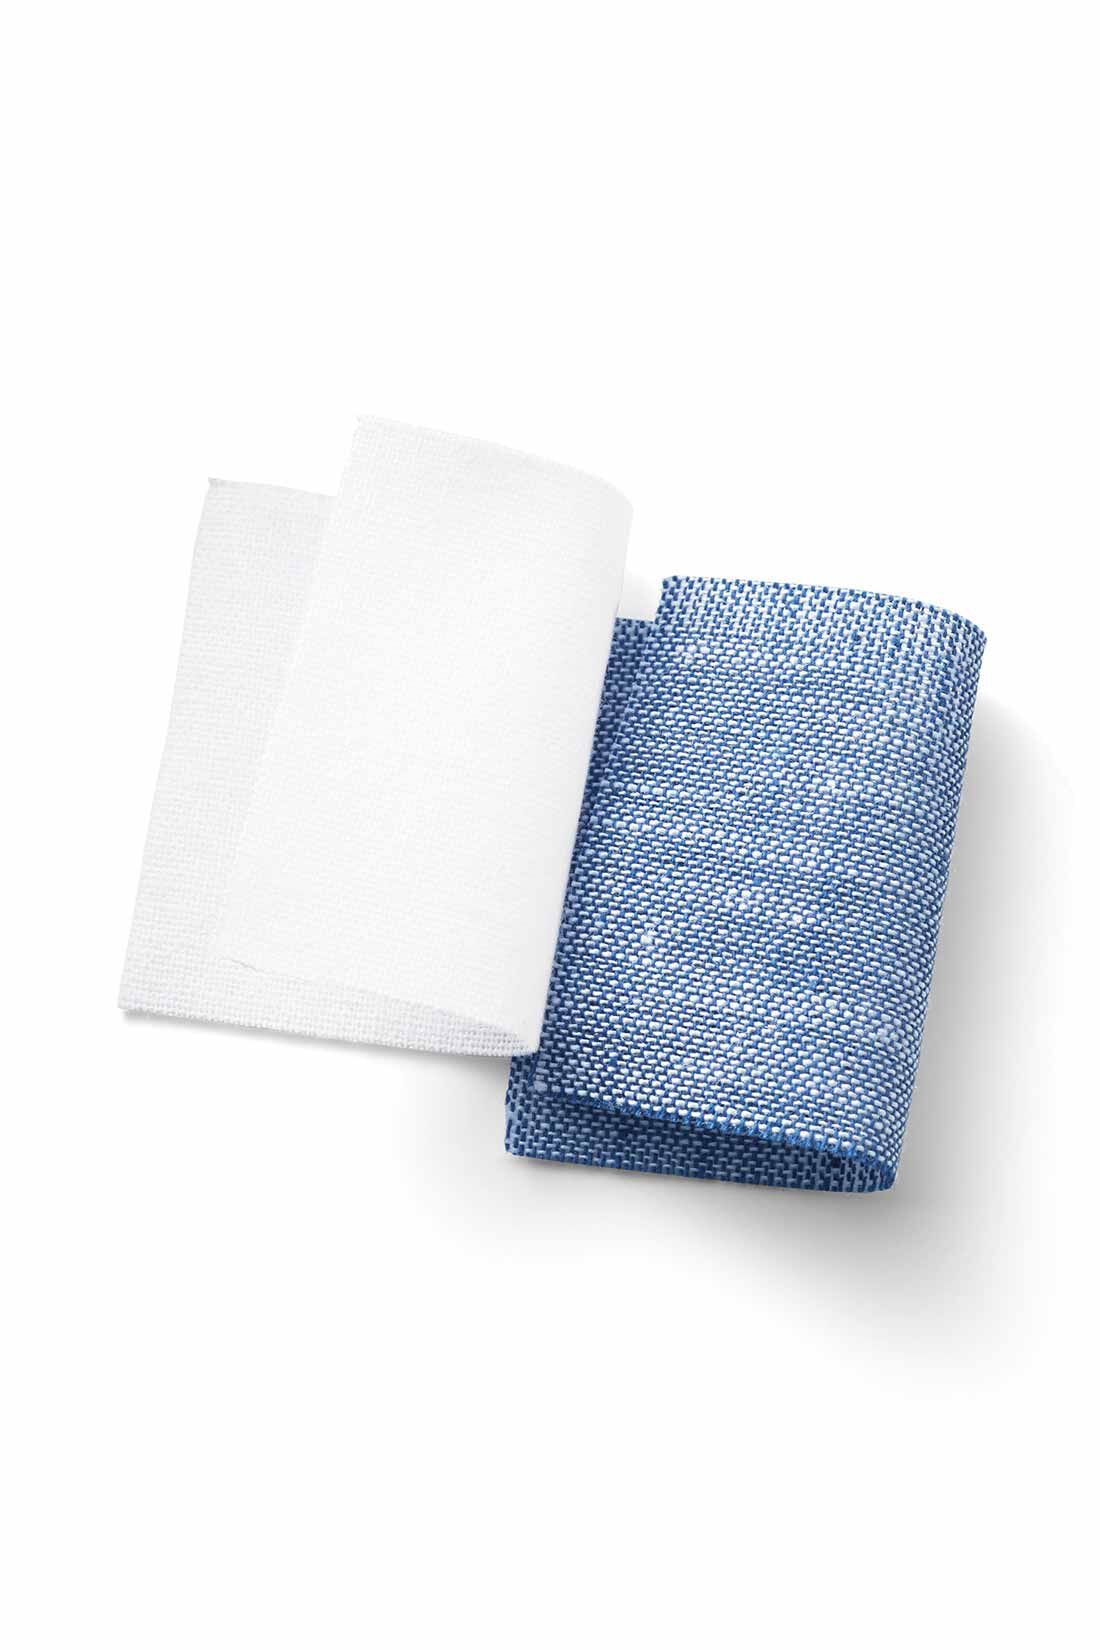 MEDE19F|MEDE19F　スクエアシルエットのデザインシャツ〈ホワイト〉|綿麻の平織生地で、さらっと涼やかな肌ざわりでほのかな透け感があります。